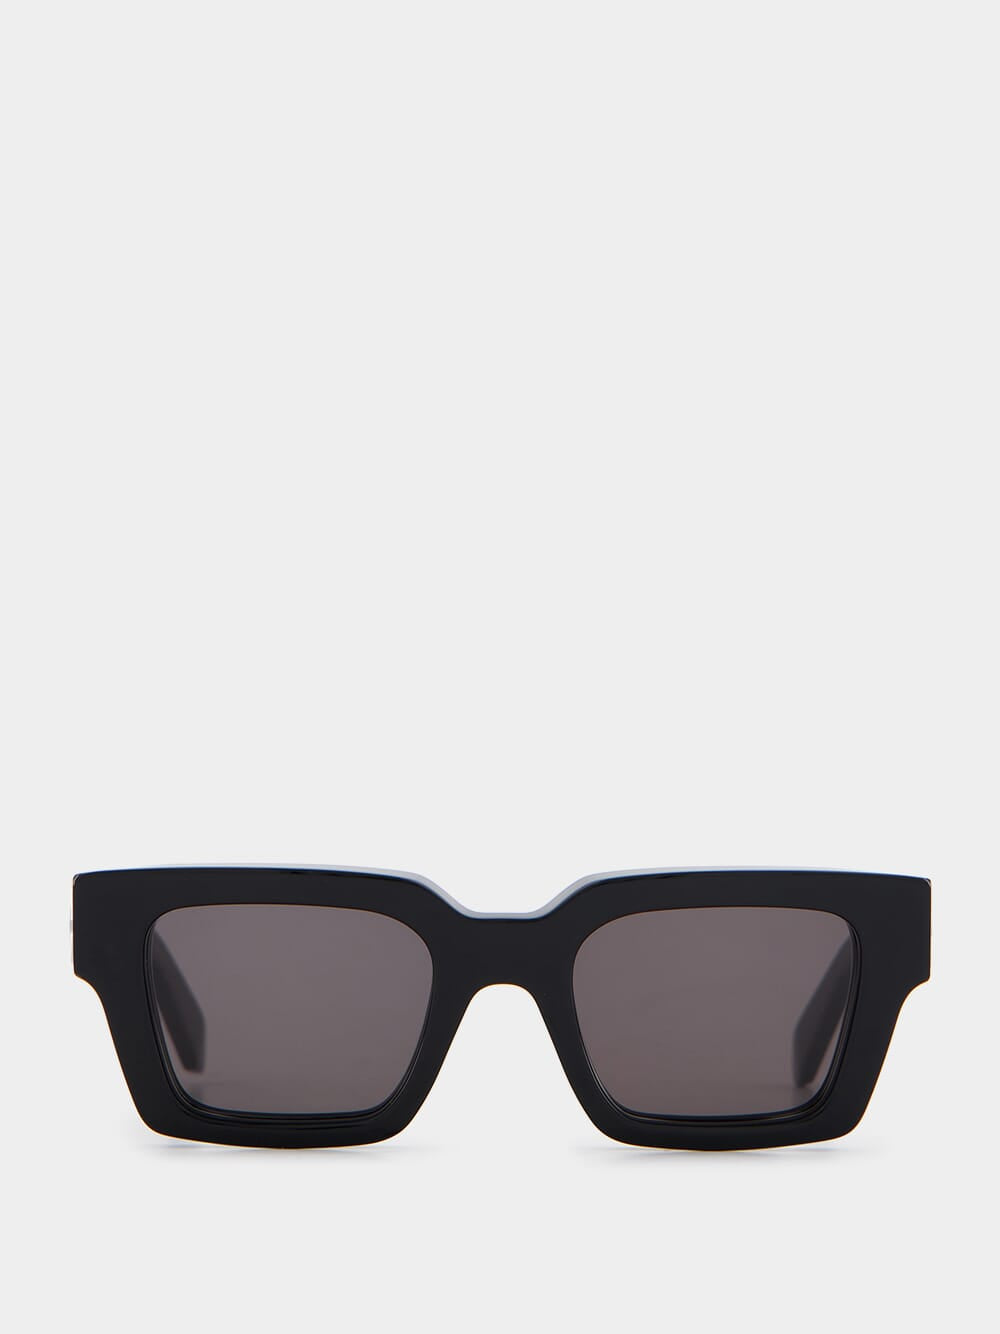 Virgil Black Sunglasses